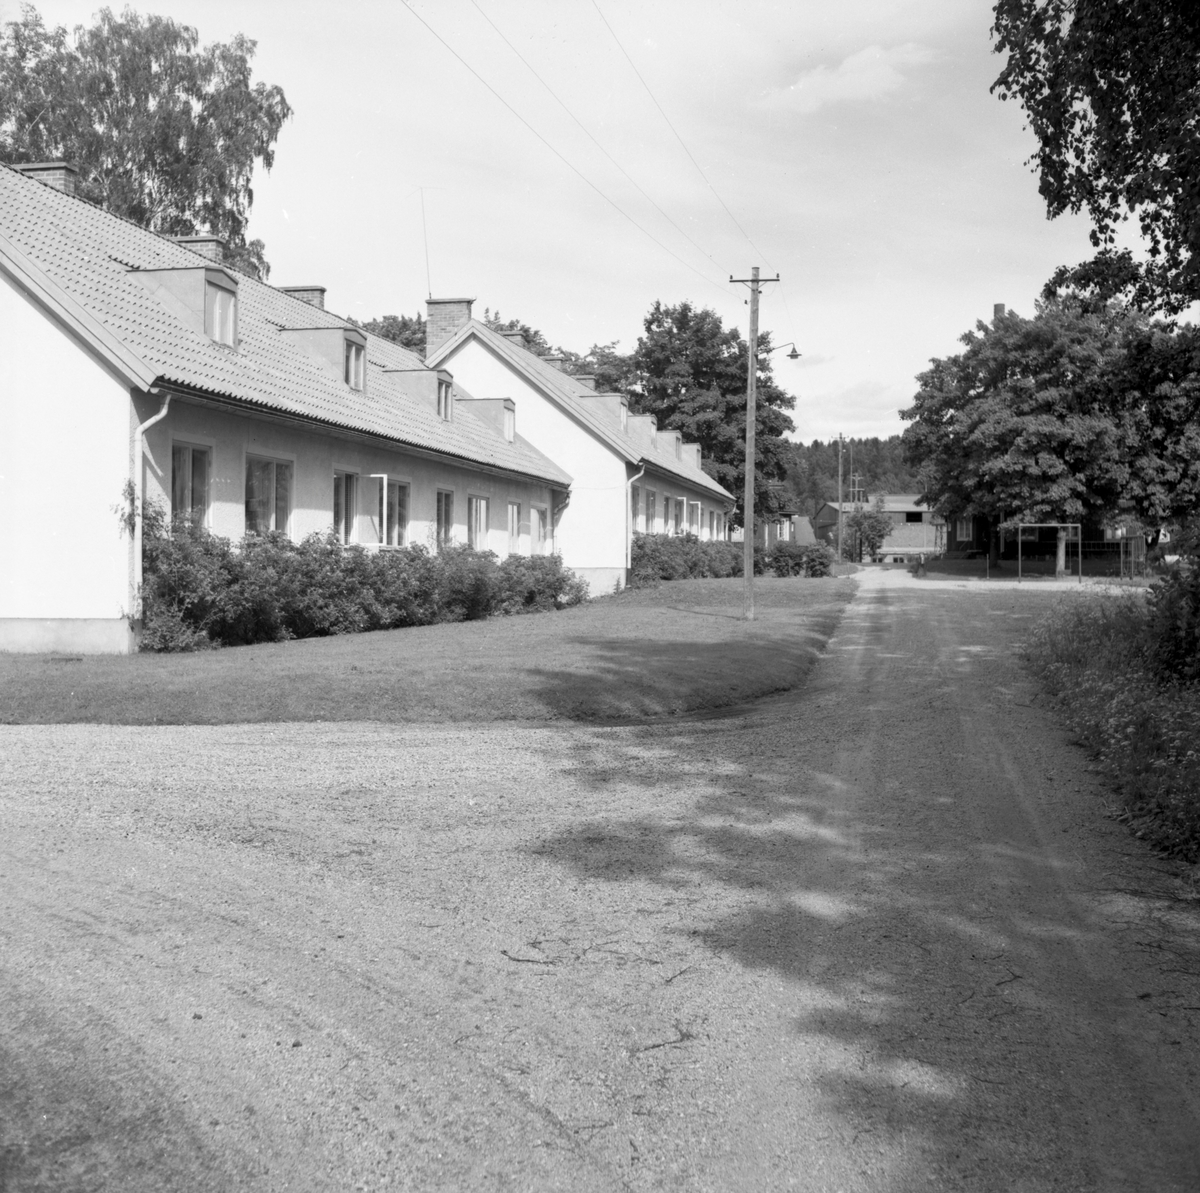 Någonstans i Värmland - från slutet av 1950-talet: Nykroppa.
Kråkåsvägen 10-12 i Nykroppa. Byggda av Uddeholms AB som arbetarbostäder. I en lägenhet var det distrikssköterskemottagning. Uppvärmning med spillvärme/fjärrvärme från järnverkets ugnar.